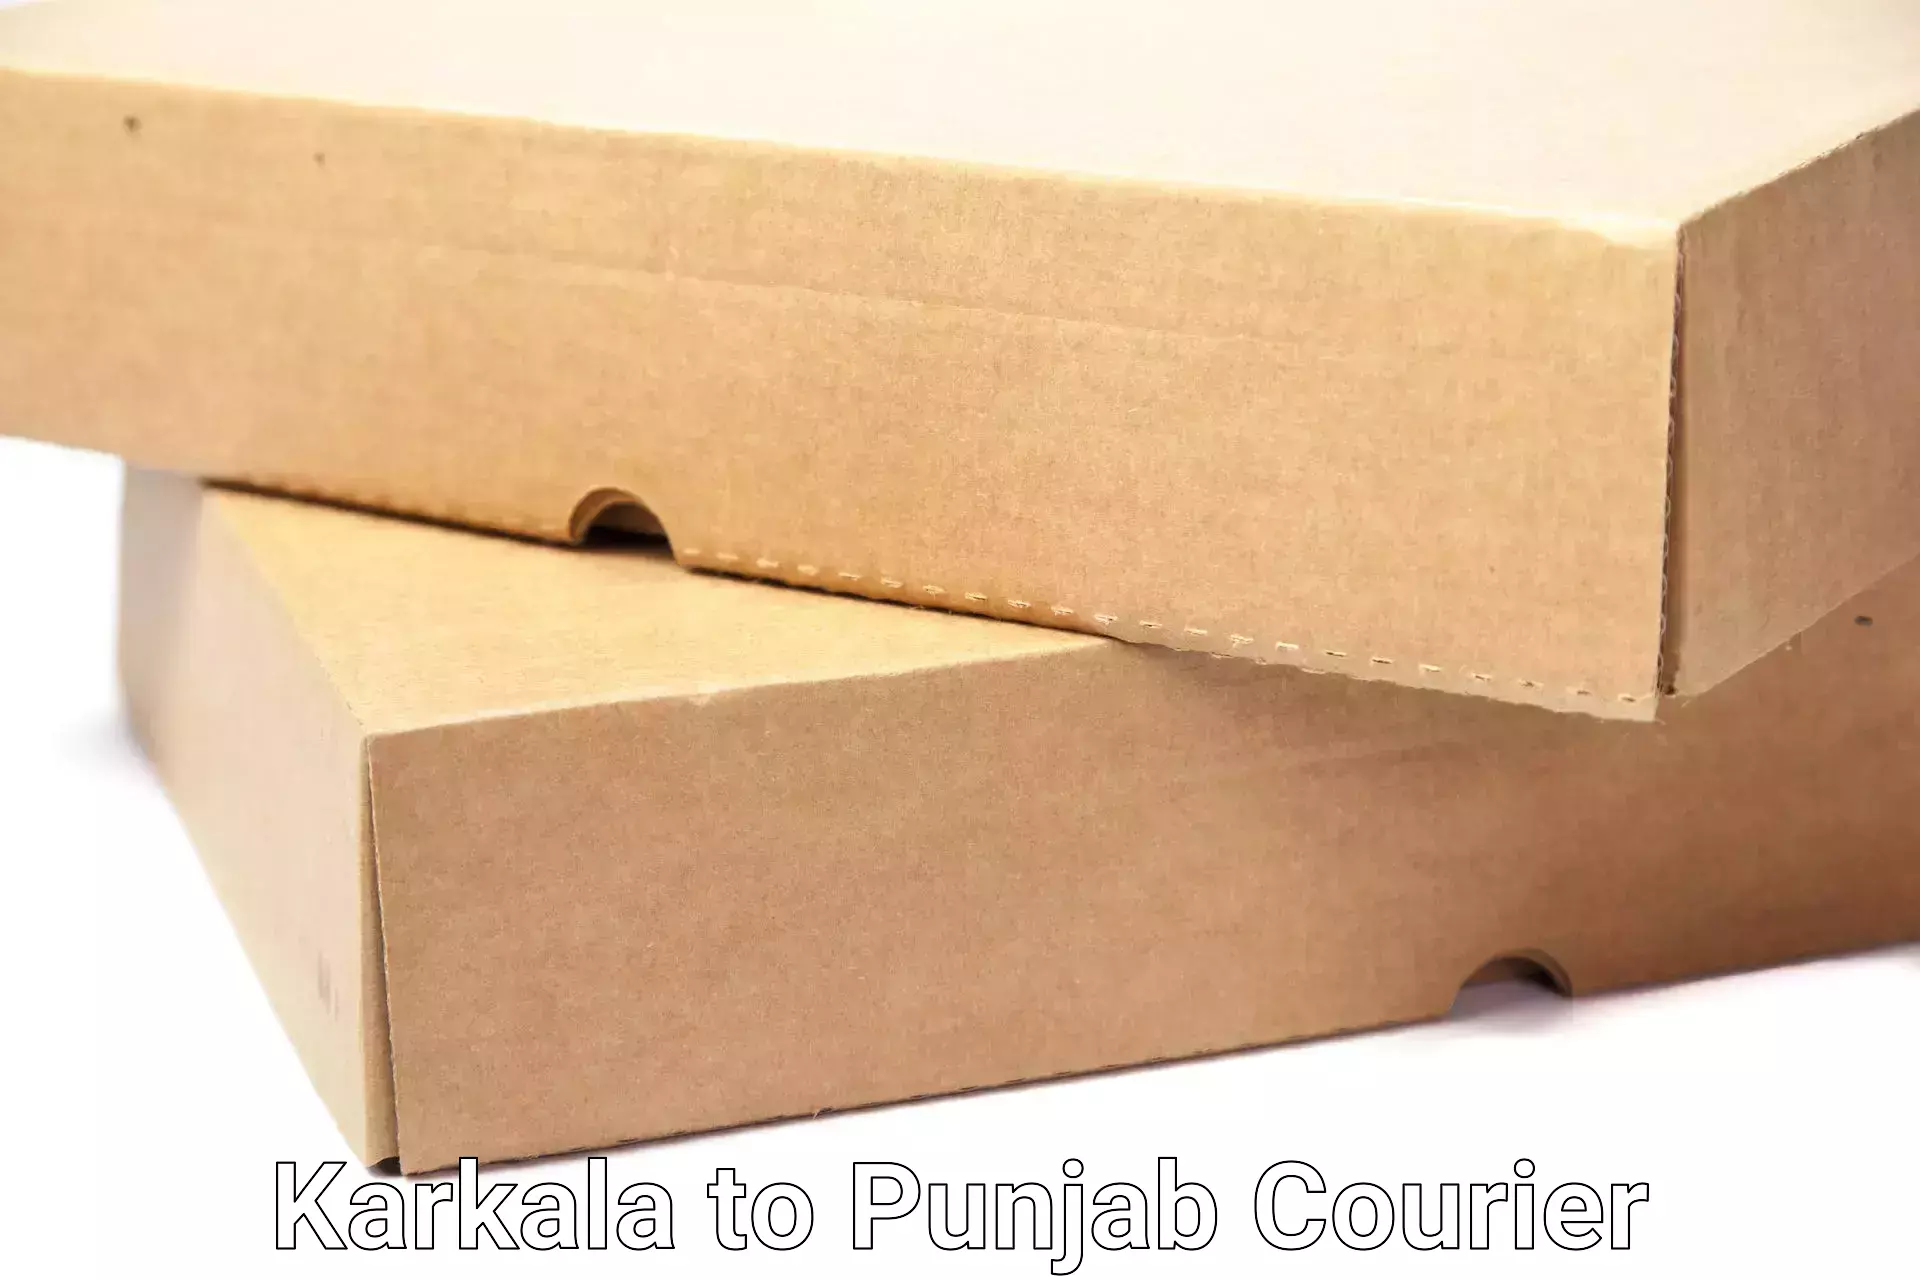 Reliable furniture movers Karkala to Punjab